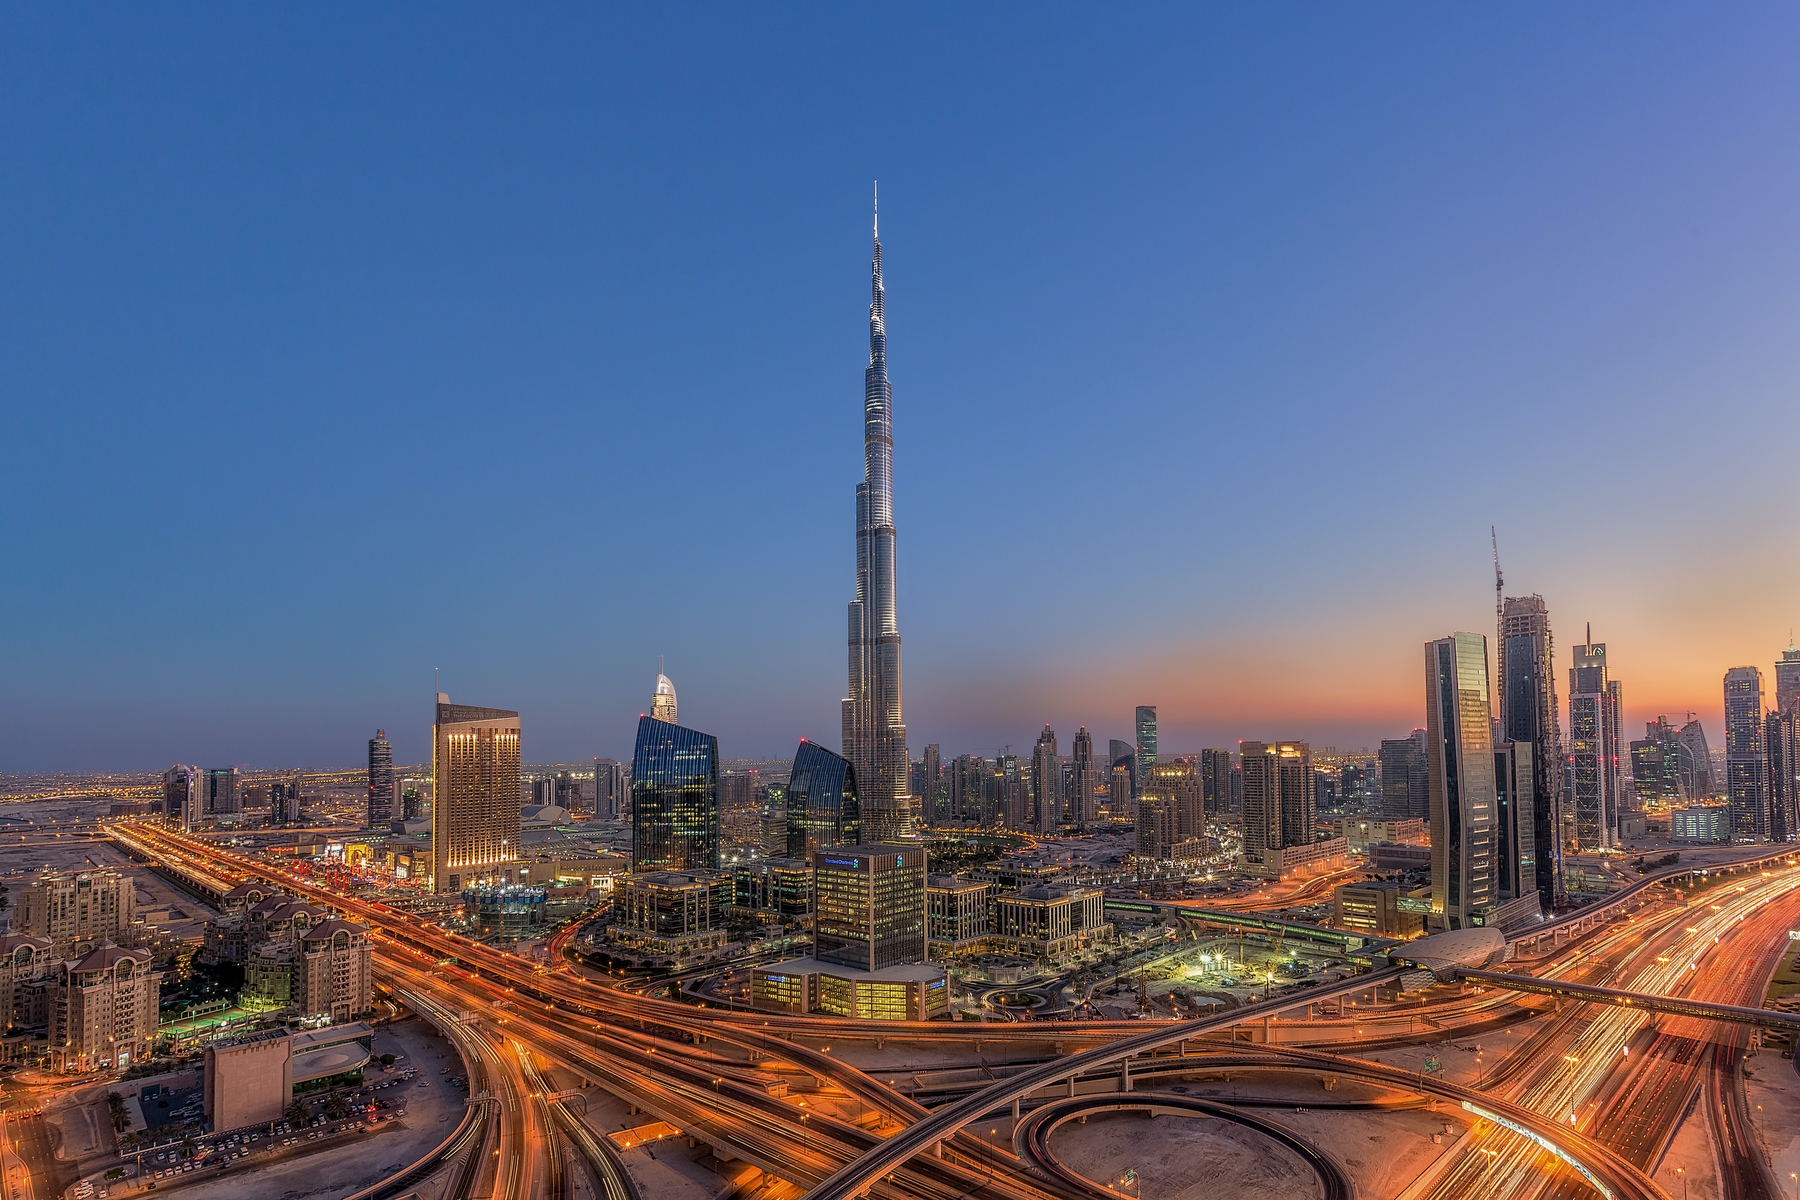 Burj khalifa Dubai